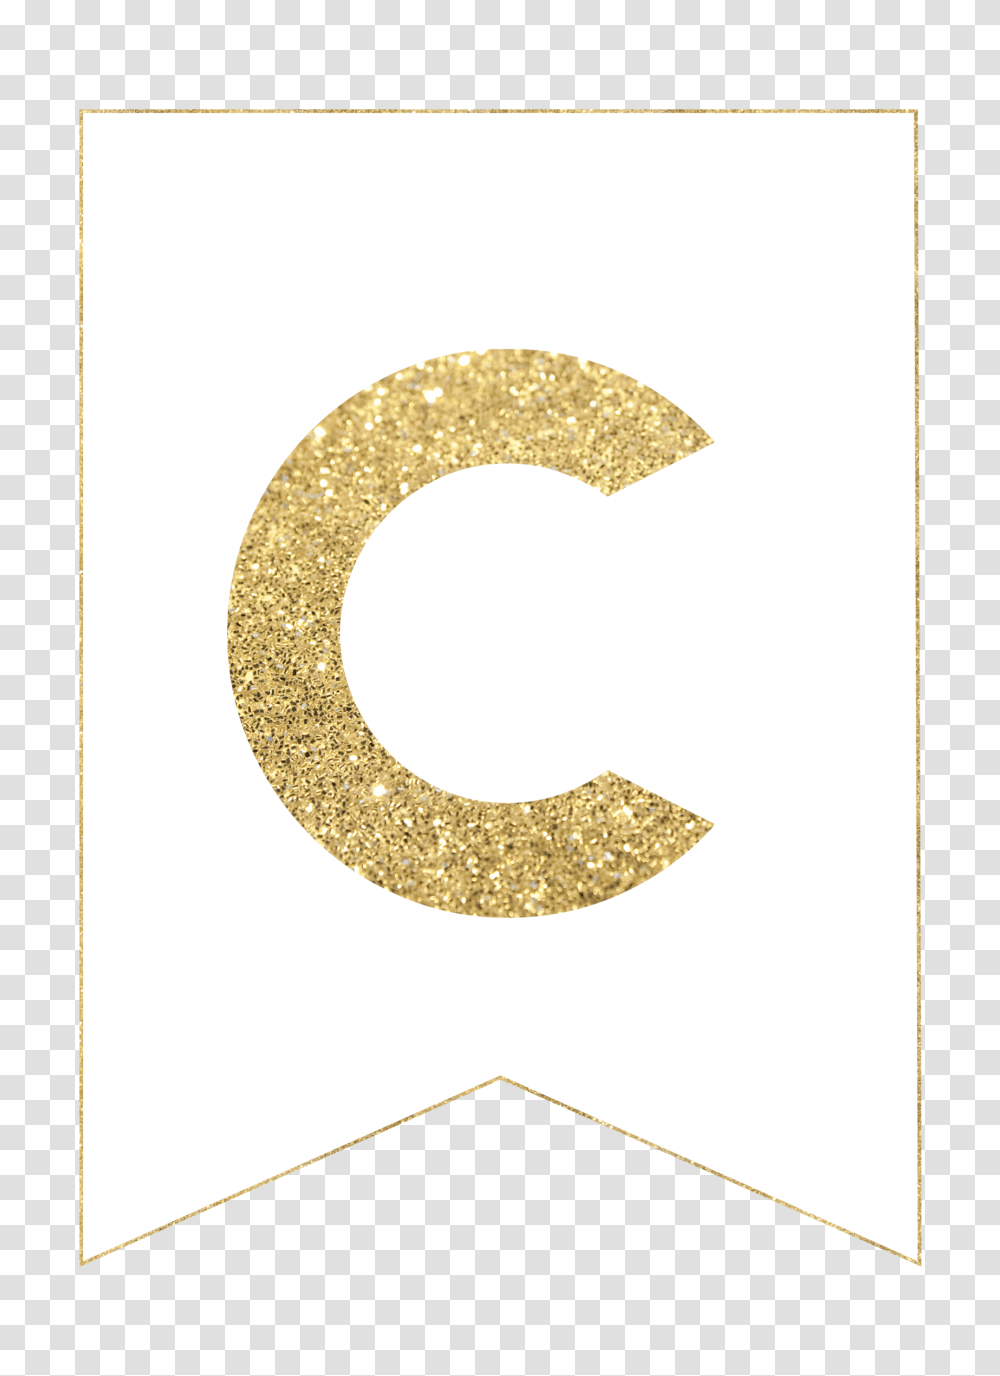 gold free printable banner letters number alphabet transparent png pngset com